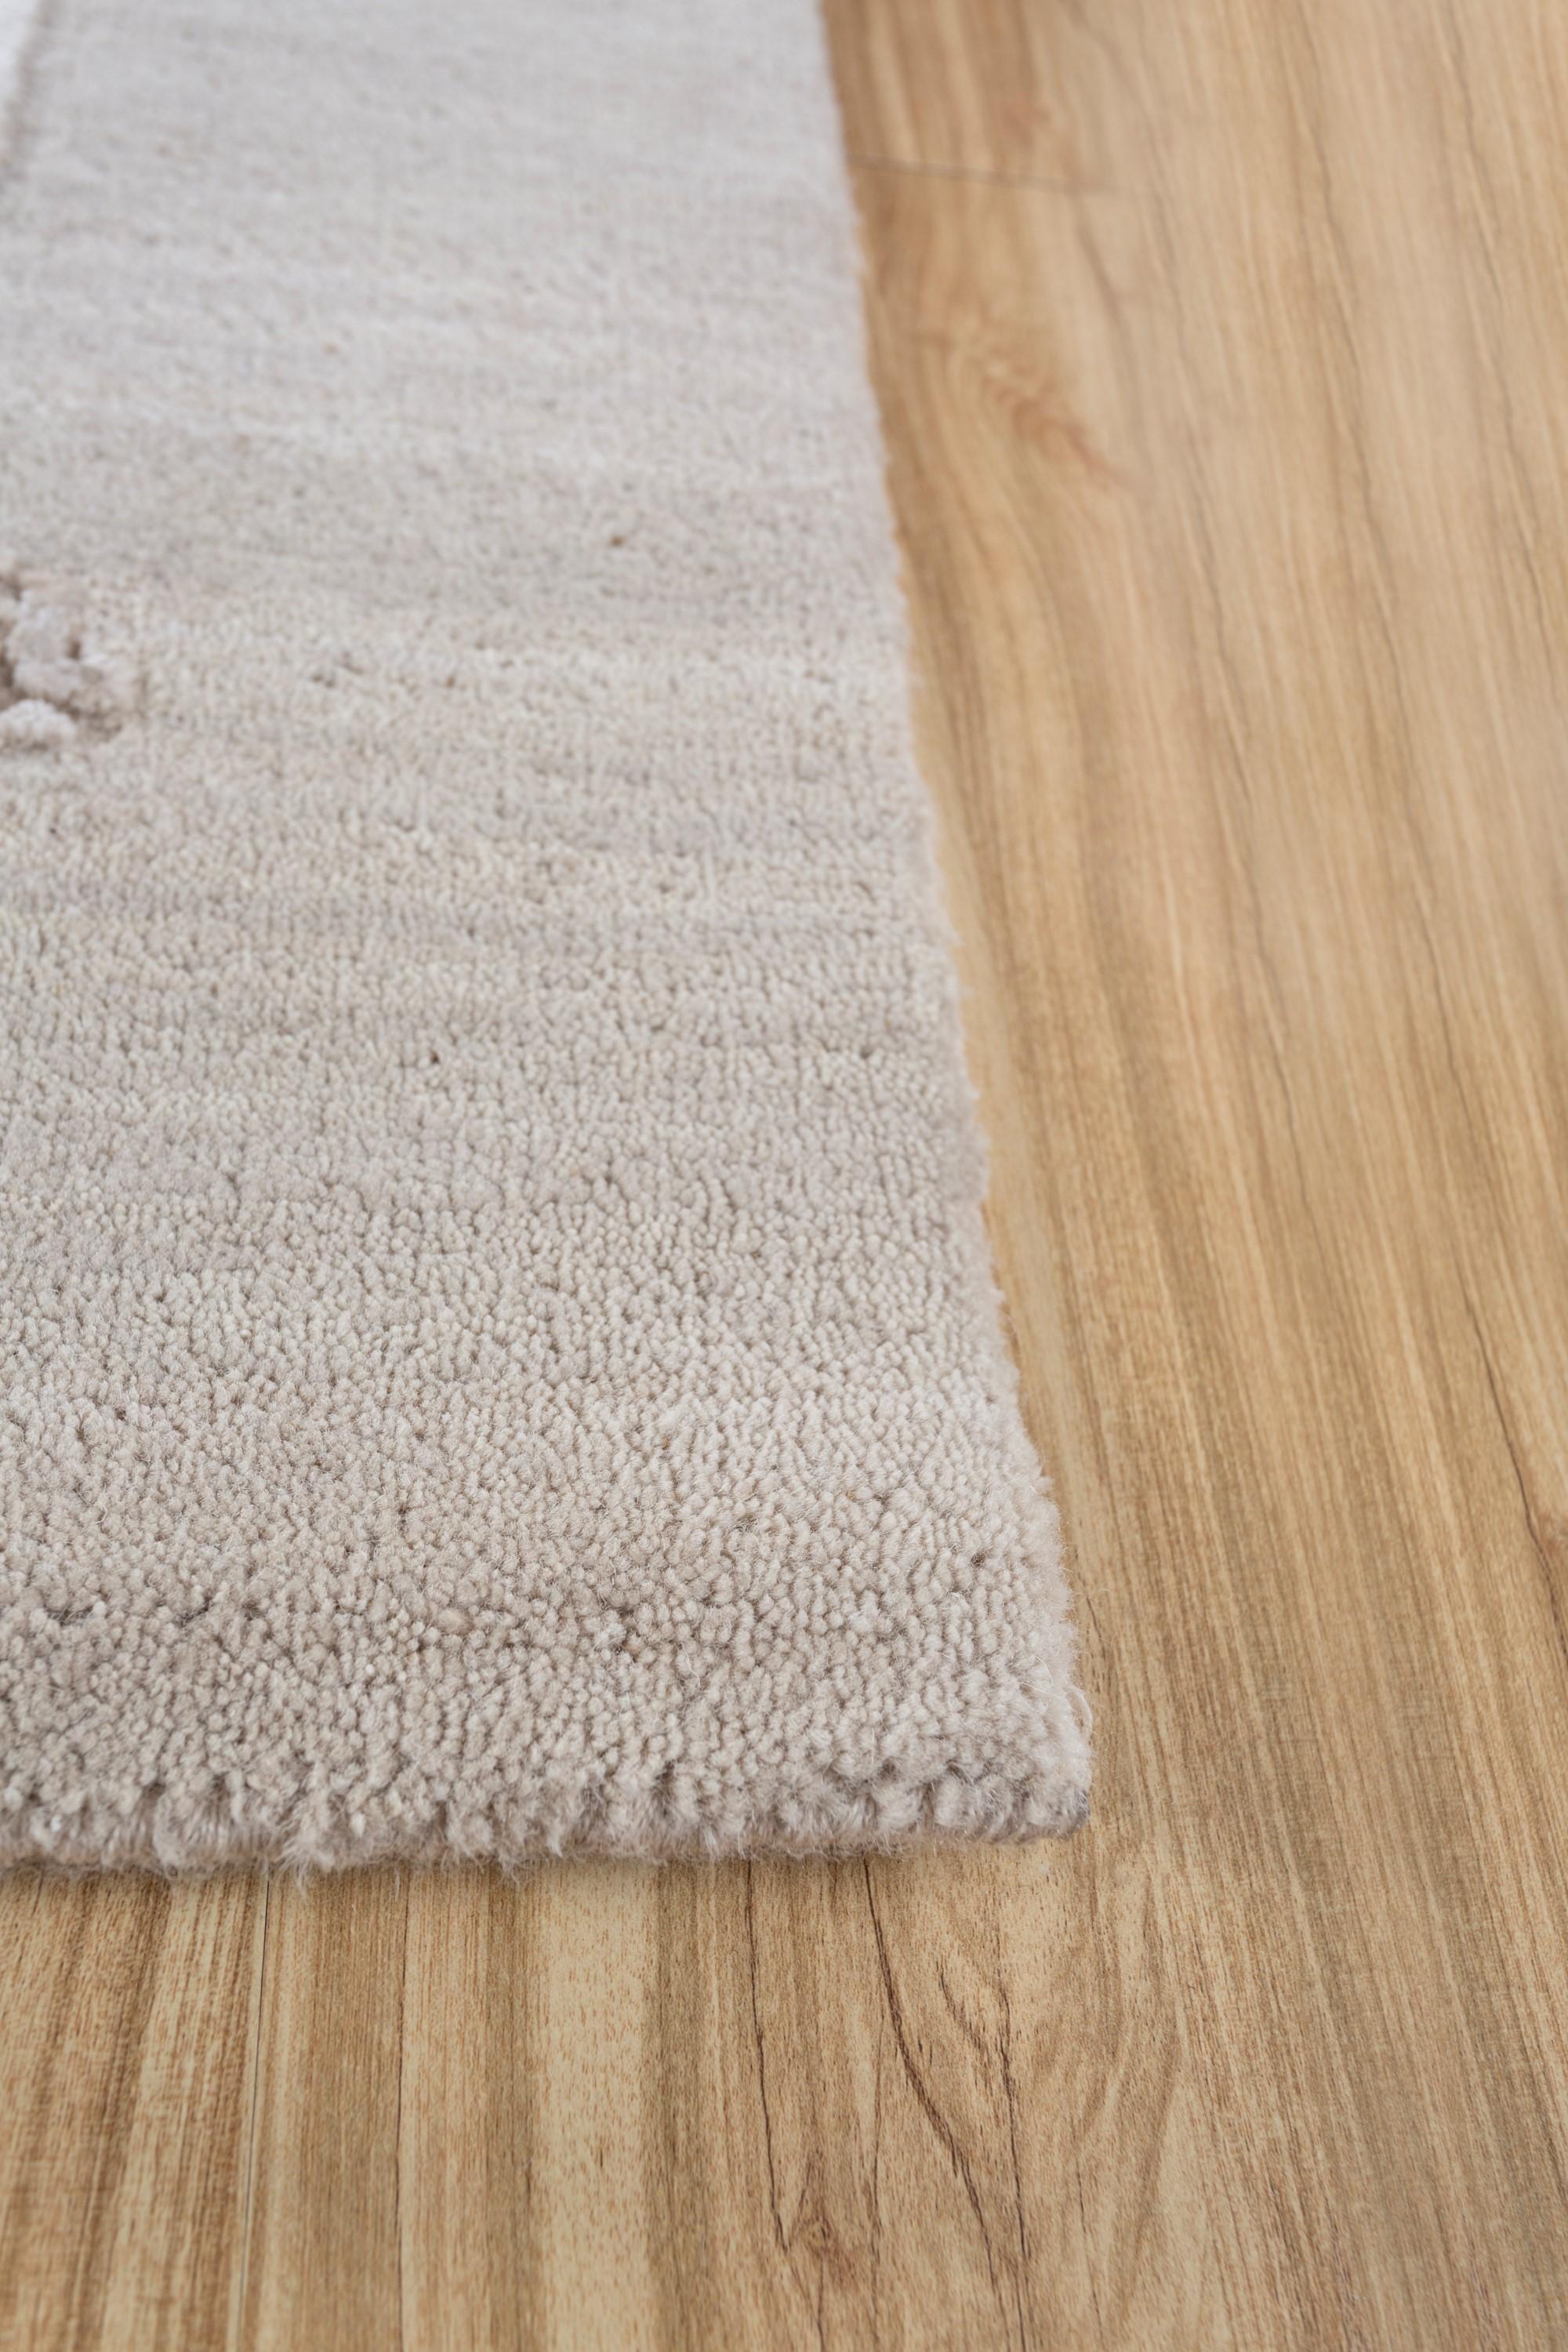 In antikes Weiß und weißen Sand getaucht, erzählt dieser Teppich eine Geschichte von zeitloser Anziehungskraft. Dieser handgeknüpfte Teppich aus luxuriöser Wolle und Bambusseide spiegelt die Inspiration der Künstlerin durch das Spiel des Lichts auf